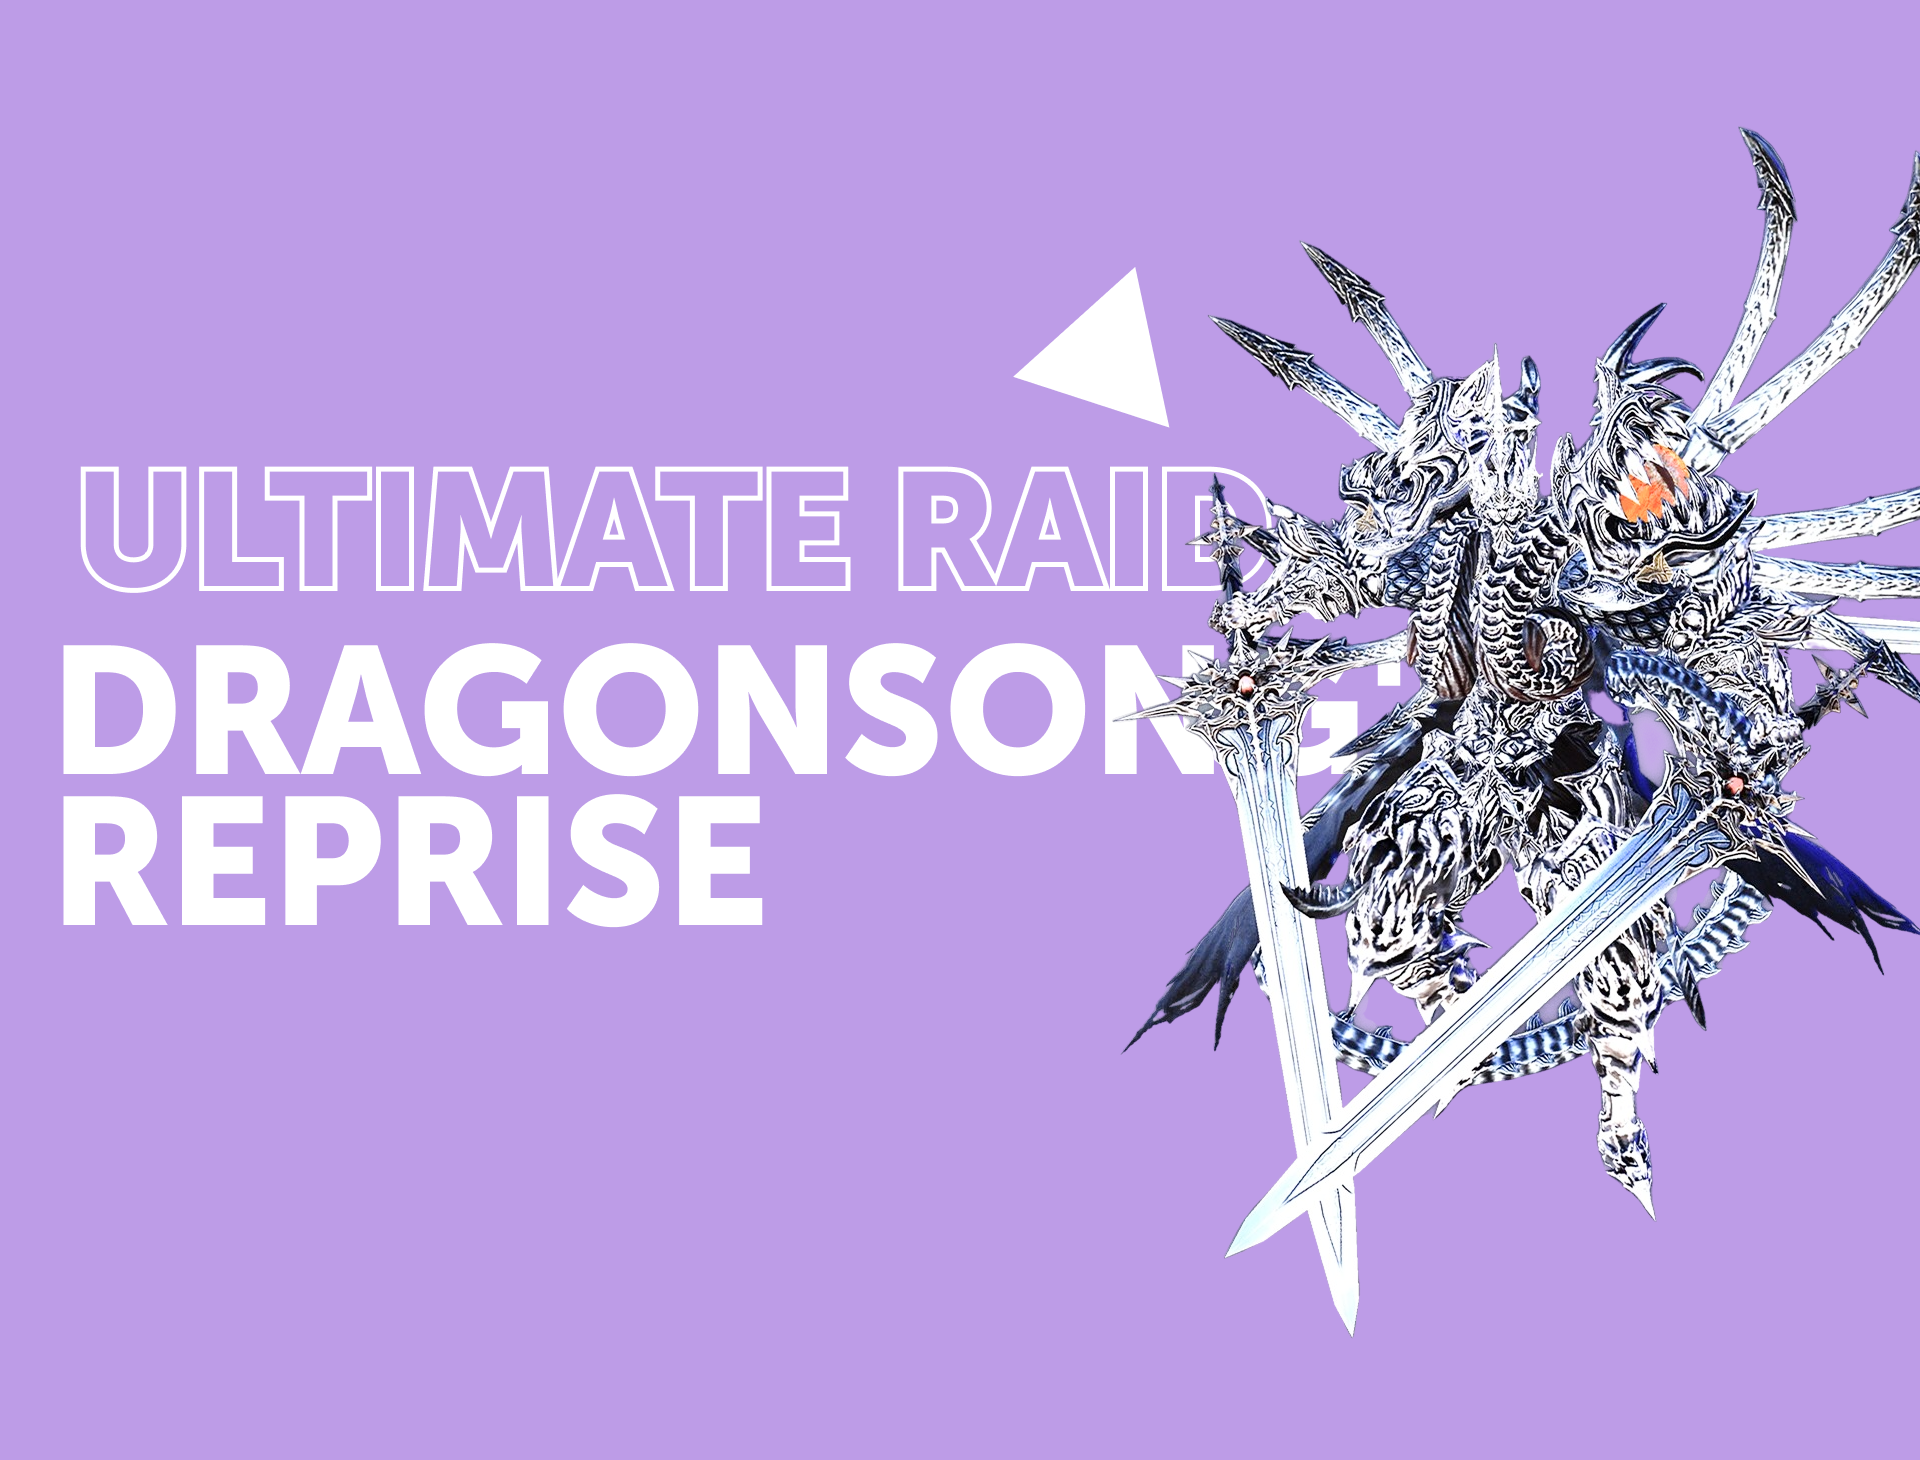 Dragonsong's Reprise - Ultimate Raid